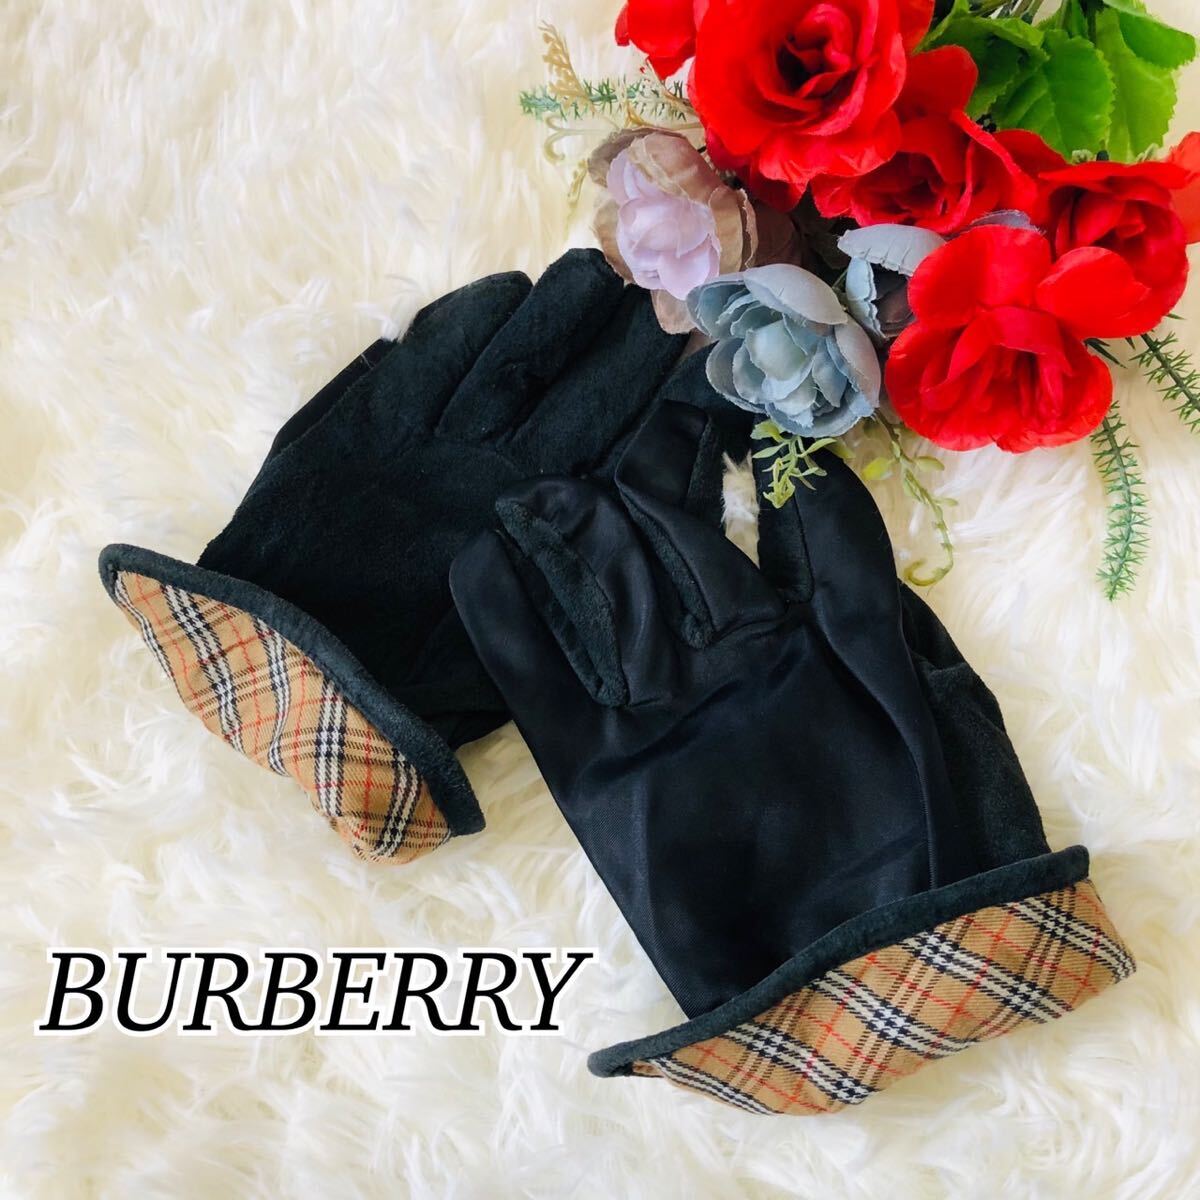 BURBERRY バーバリー レディース 女性 婦人 手袋 グローブ 黒 ブラック ホースロゴ チェック チェック柄 ビジネス 私服 通勤用 10.5×21cm_画像1